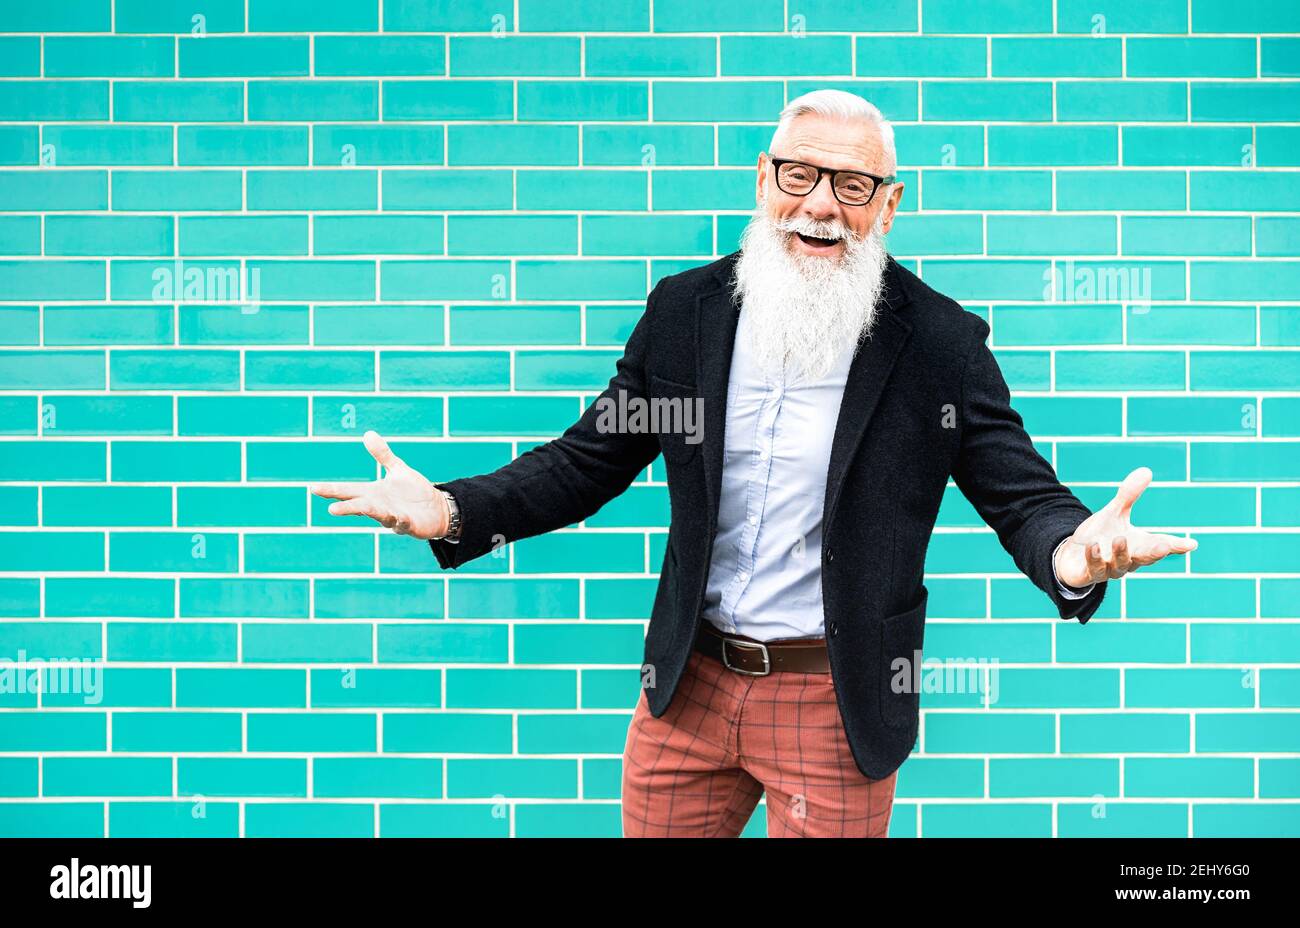 Fröhlicher Hipster Mann auf Willkommens-Stimmung posiert gegen türkisfarbene Wand Hintergrund - trendige alte Person tragen lässige Mode Kleidung - Glückliches älteres Leben Stockfoto